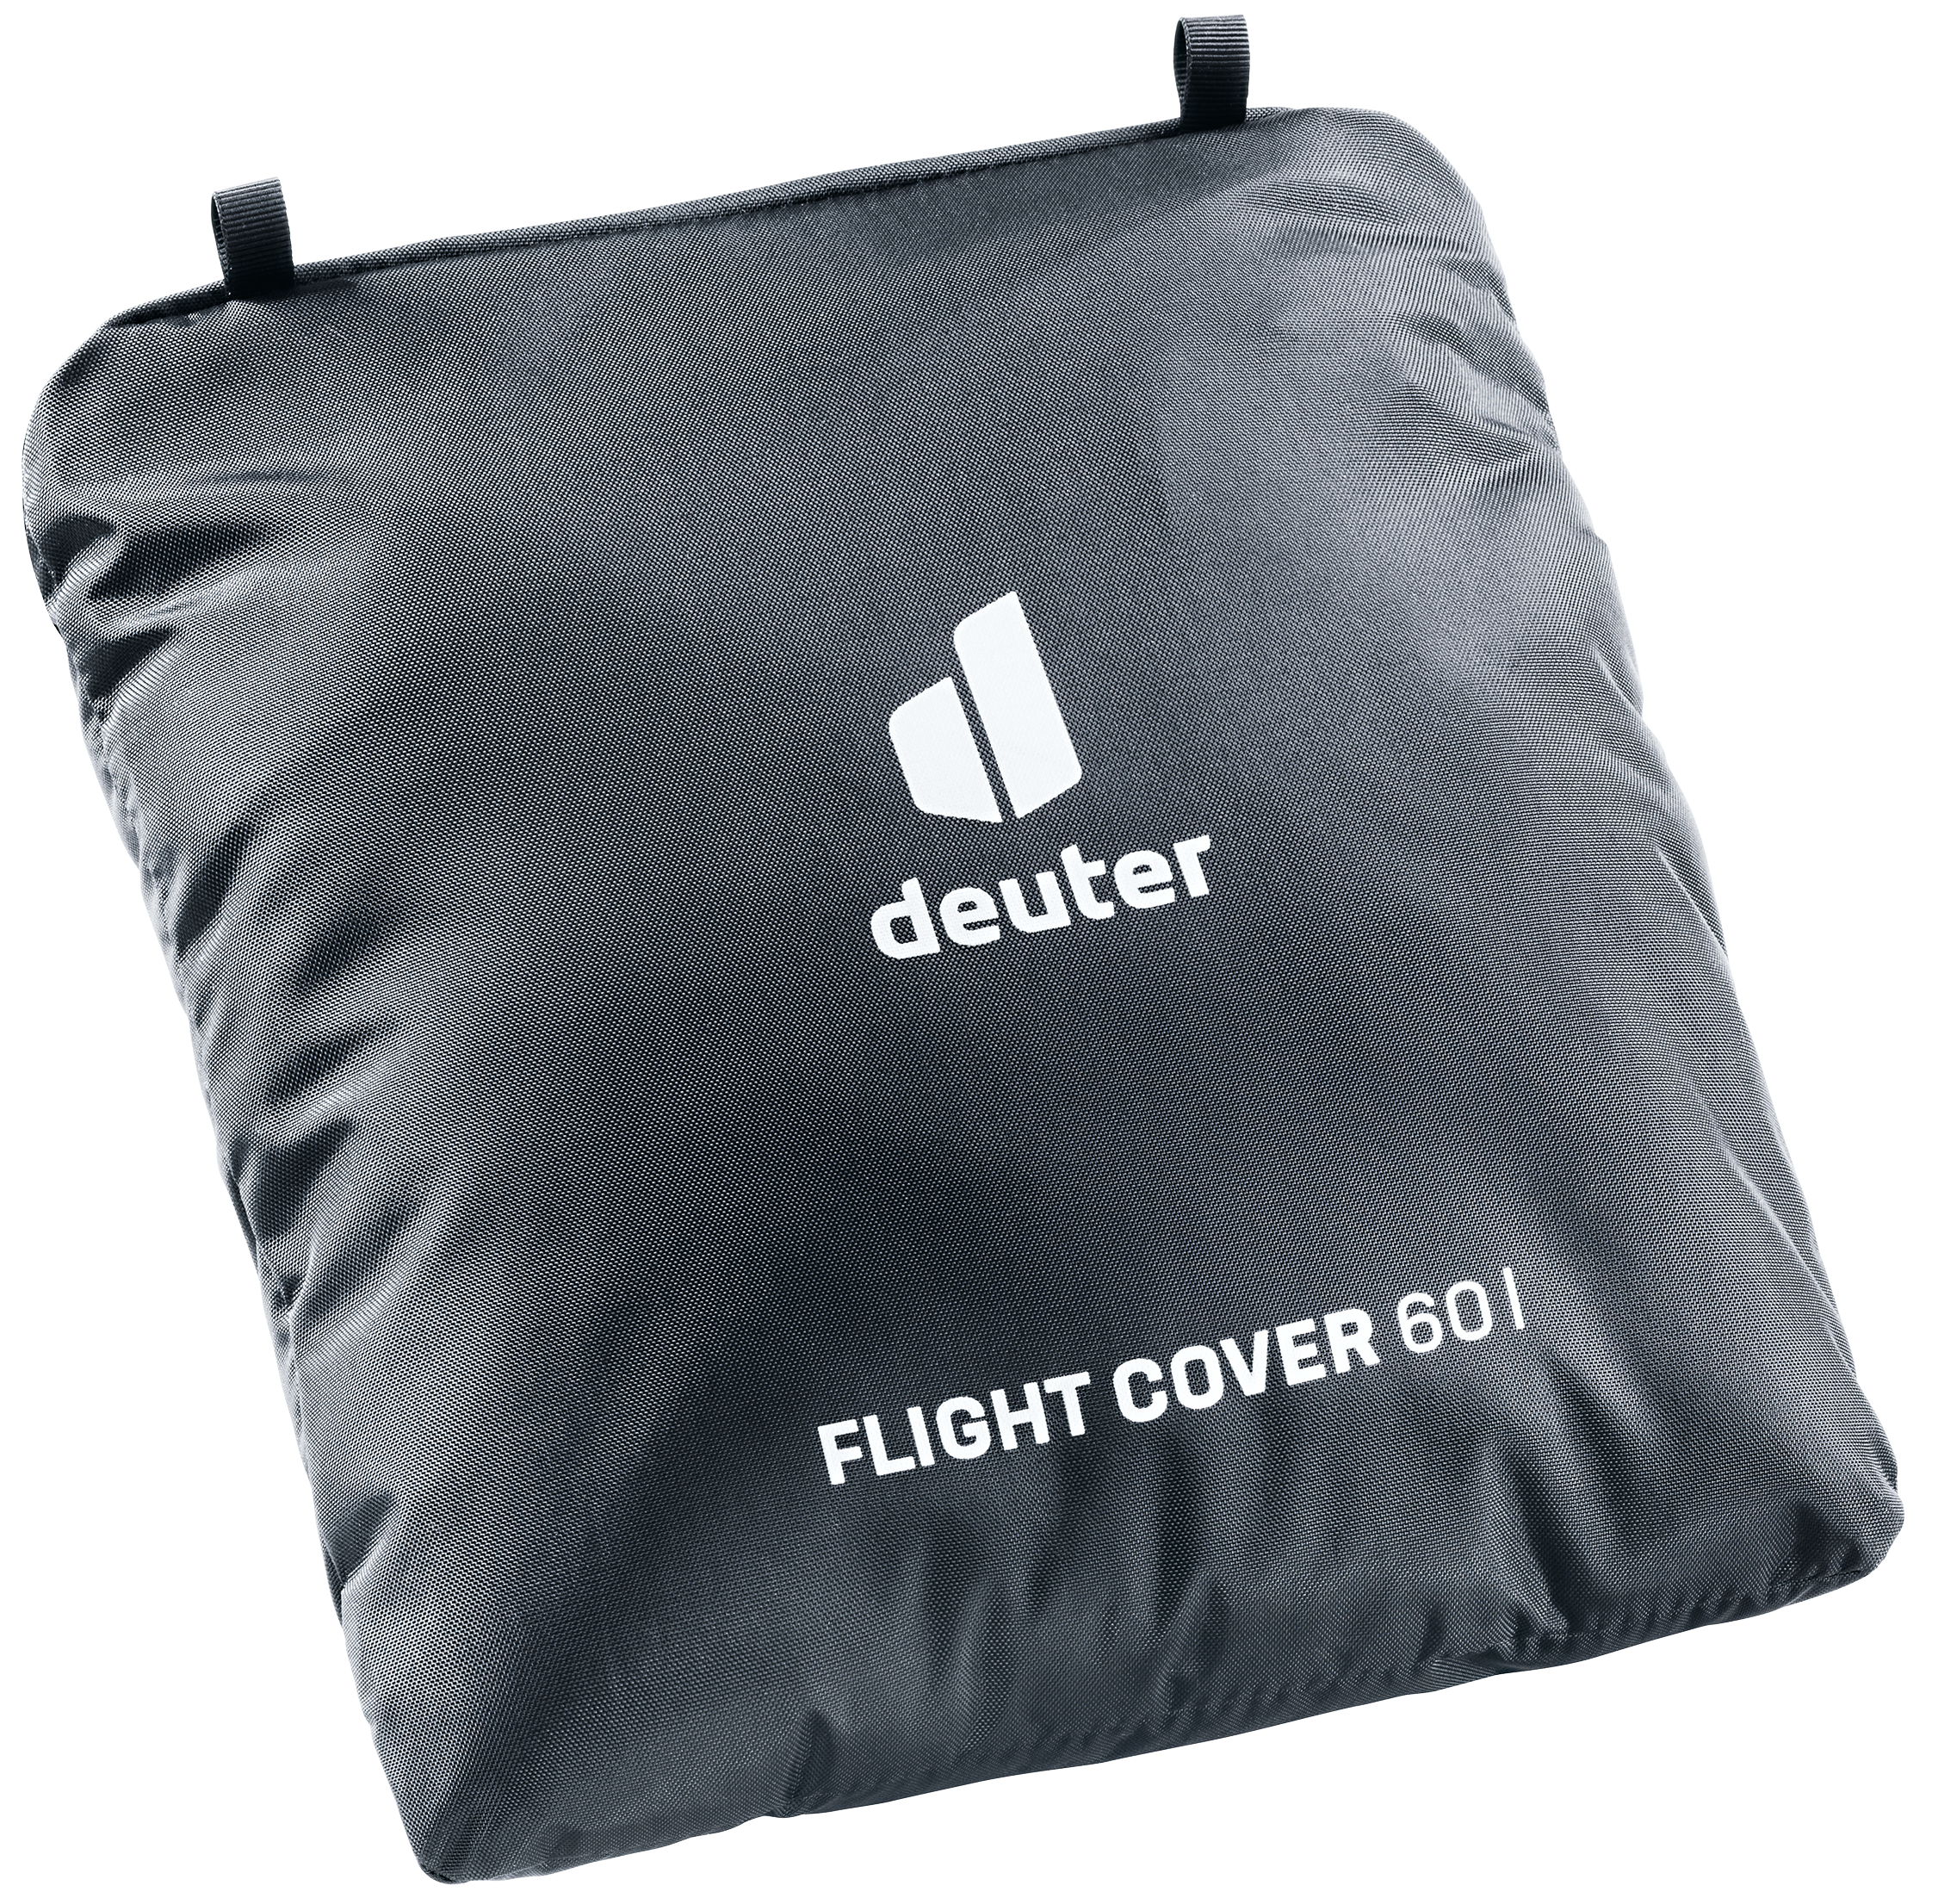 Deuter Flight Cover 60 online kaufen